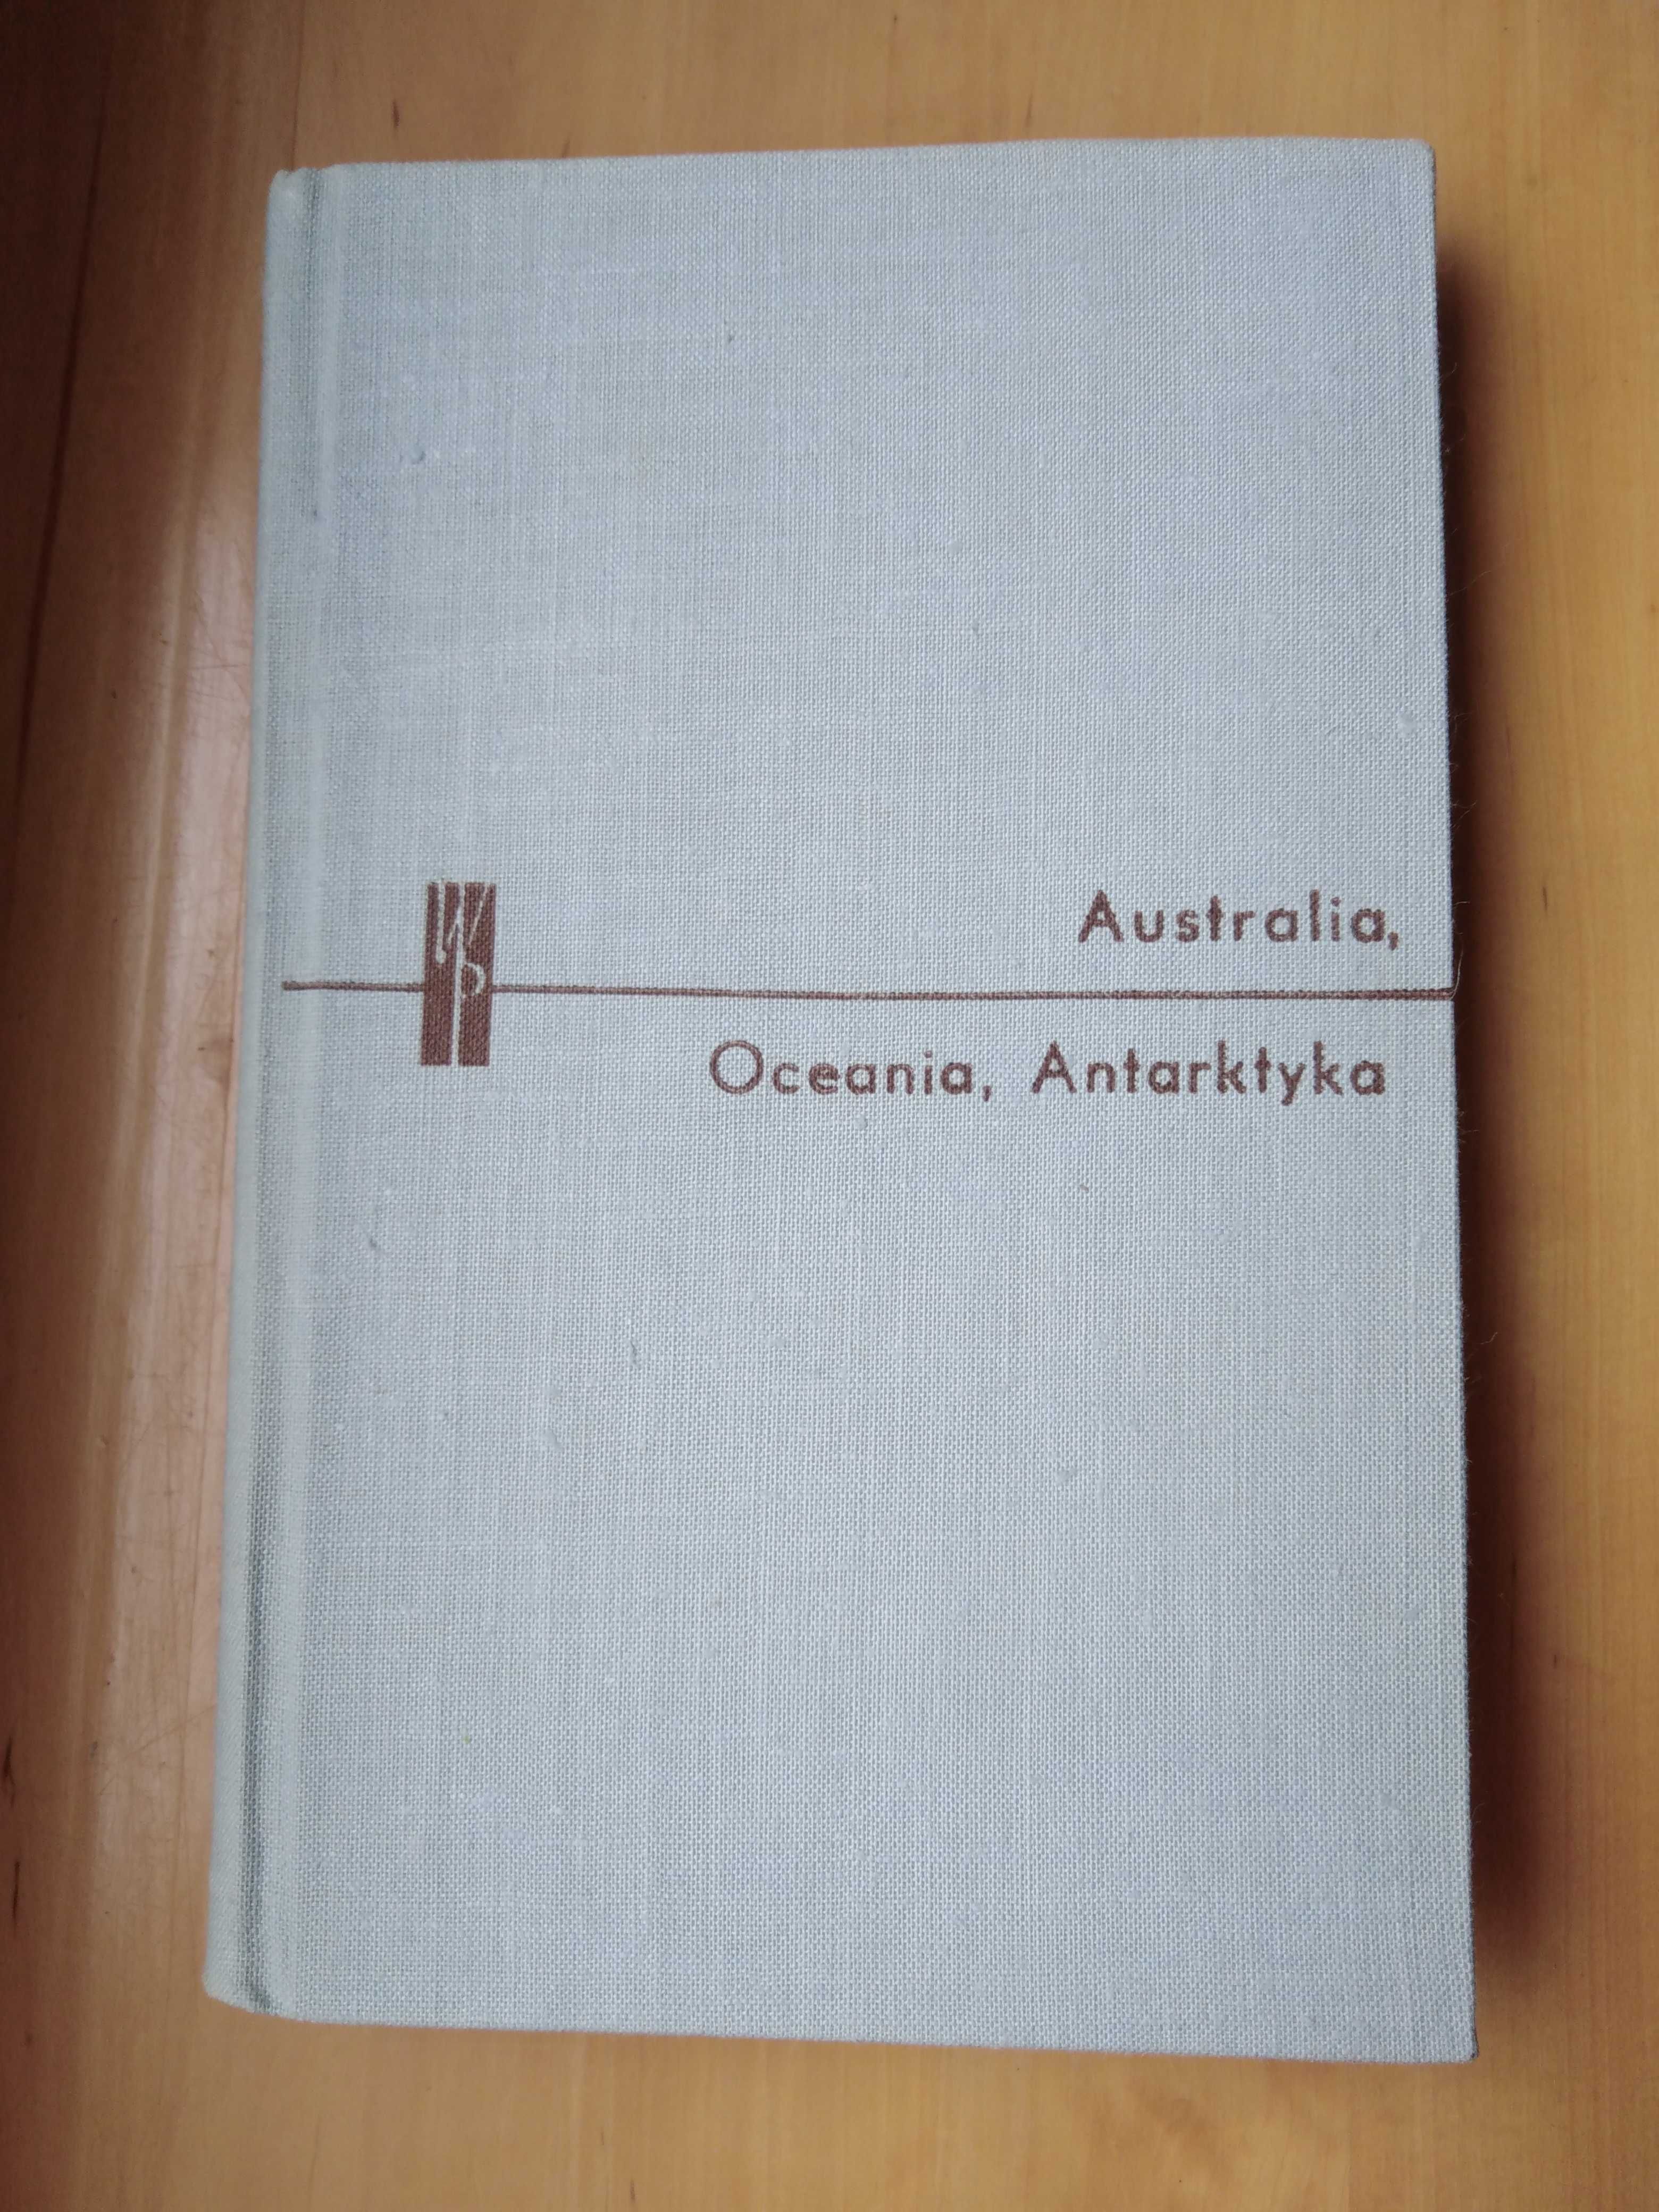 Australia, Oceania, Antarktyka